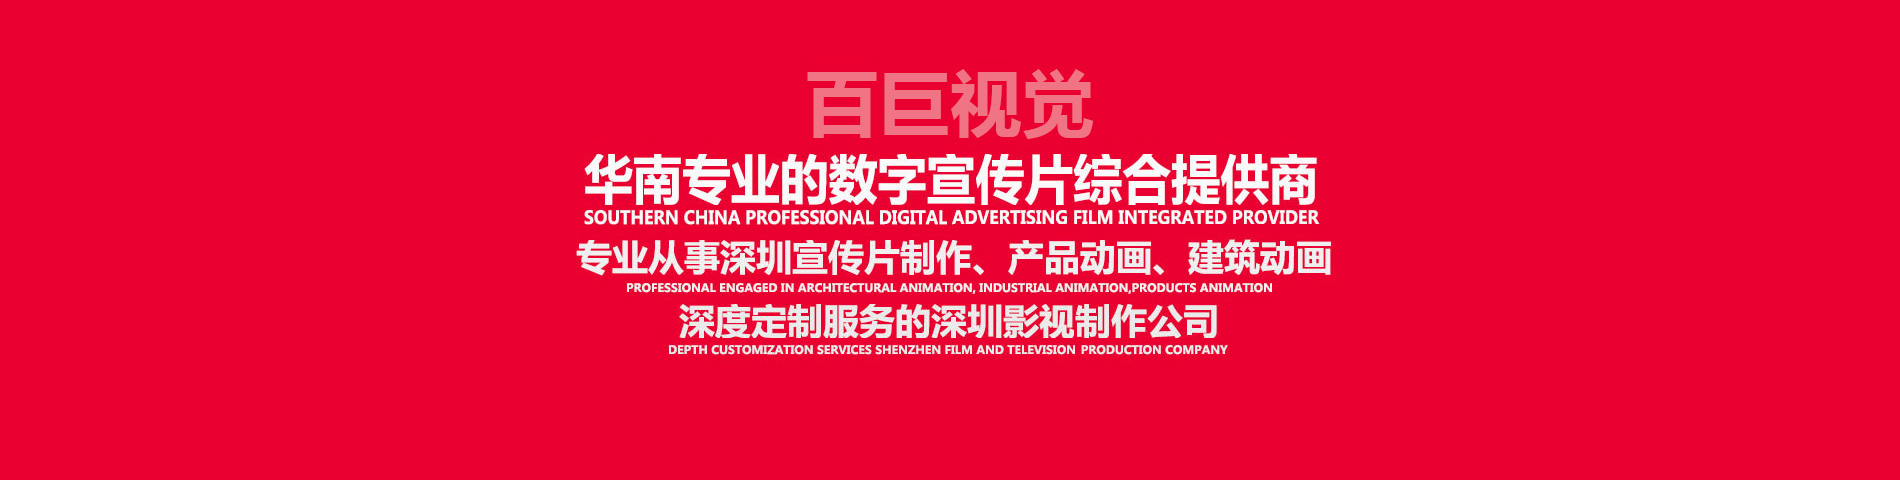 深圳宣傳片制作、深圳視頻制作、深圳影視制作、深圳視頻拍攝，深度定制服務的深圳影視制作公司